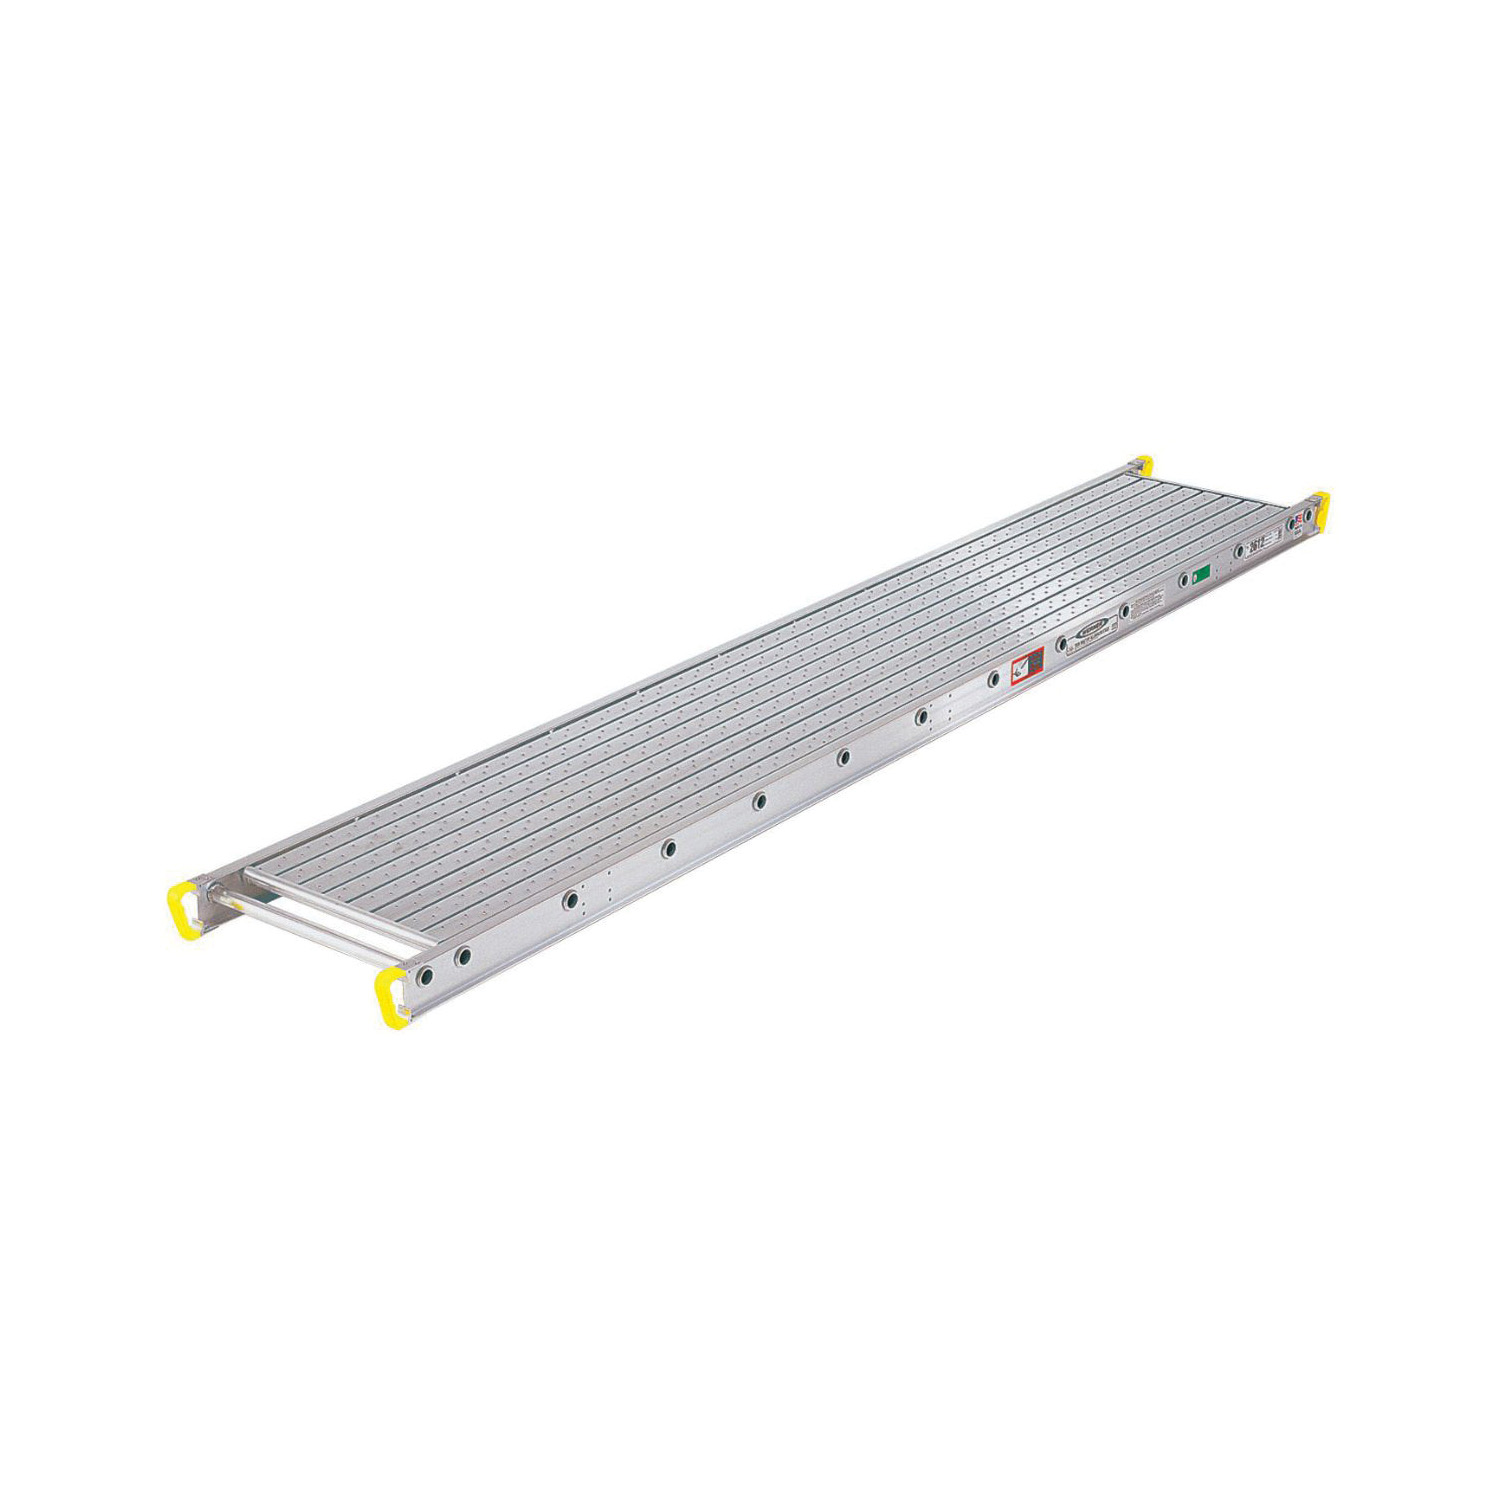 WERNER® 2324 2300 Ladder Jack Stage, 24 ft L x 12 in W x 6 in H, 500 lb Load, Aluminum